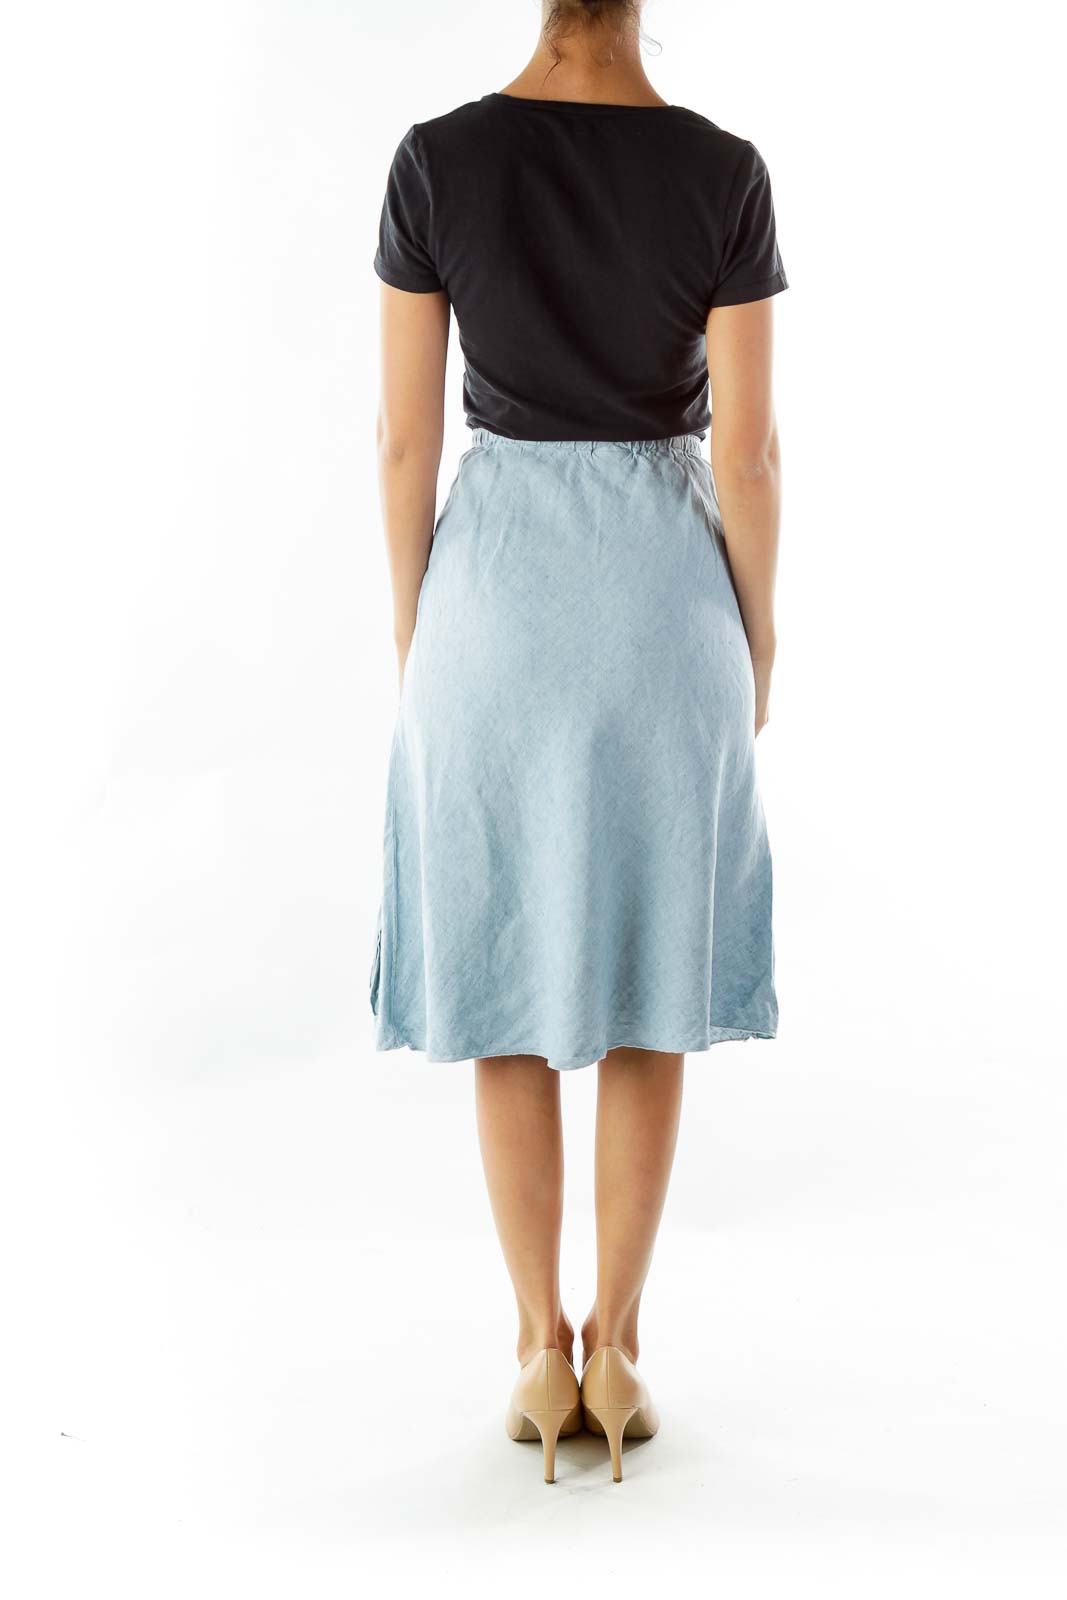 J.Jill Pink Linen Paisley Skirt